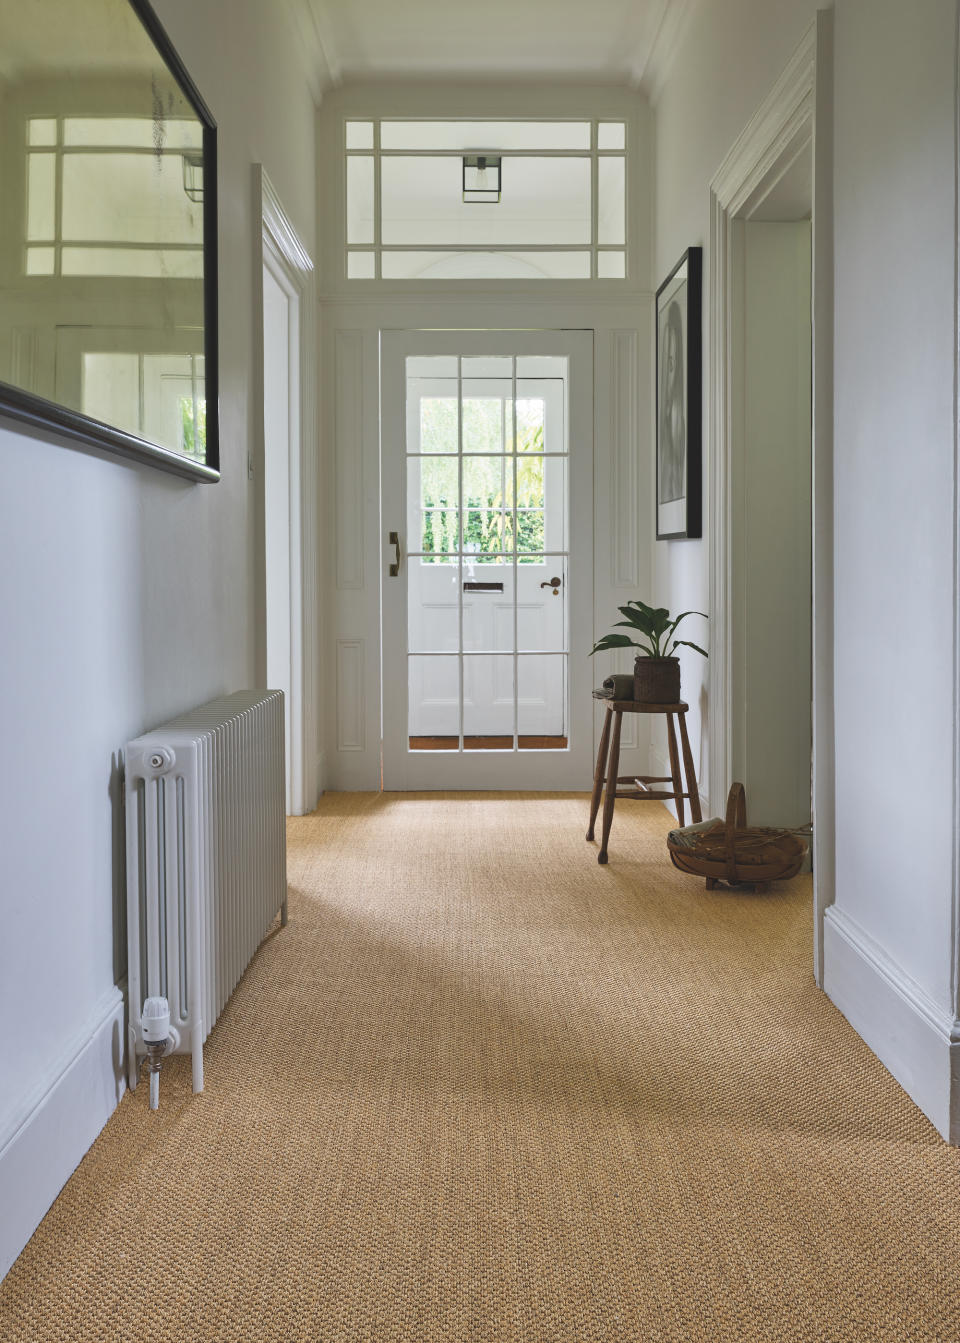 9. Vacuum entryway carpets or wash floorboards